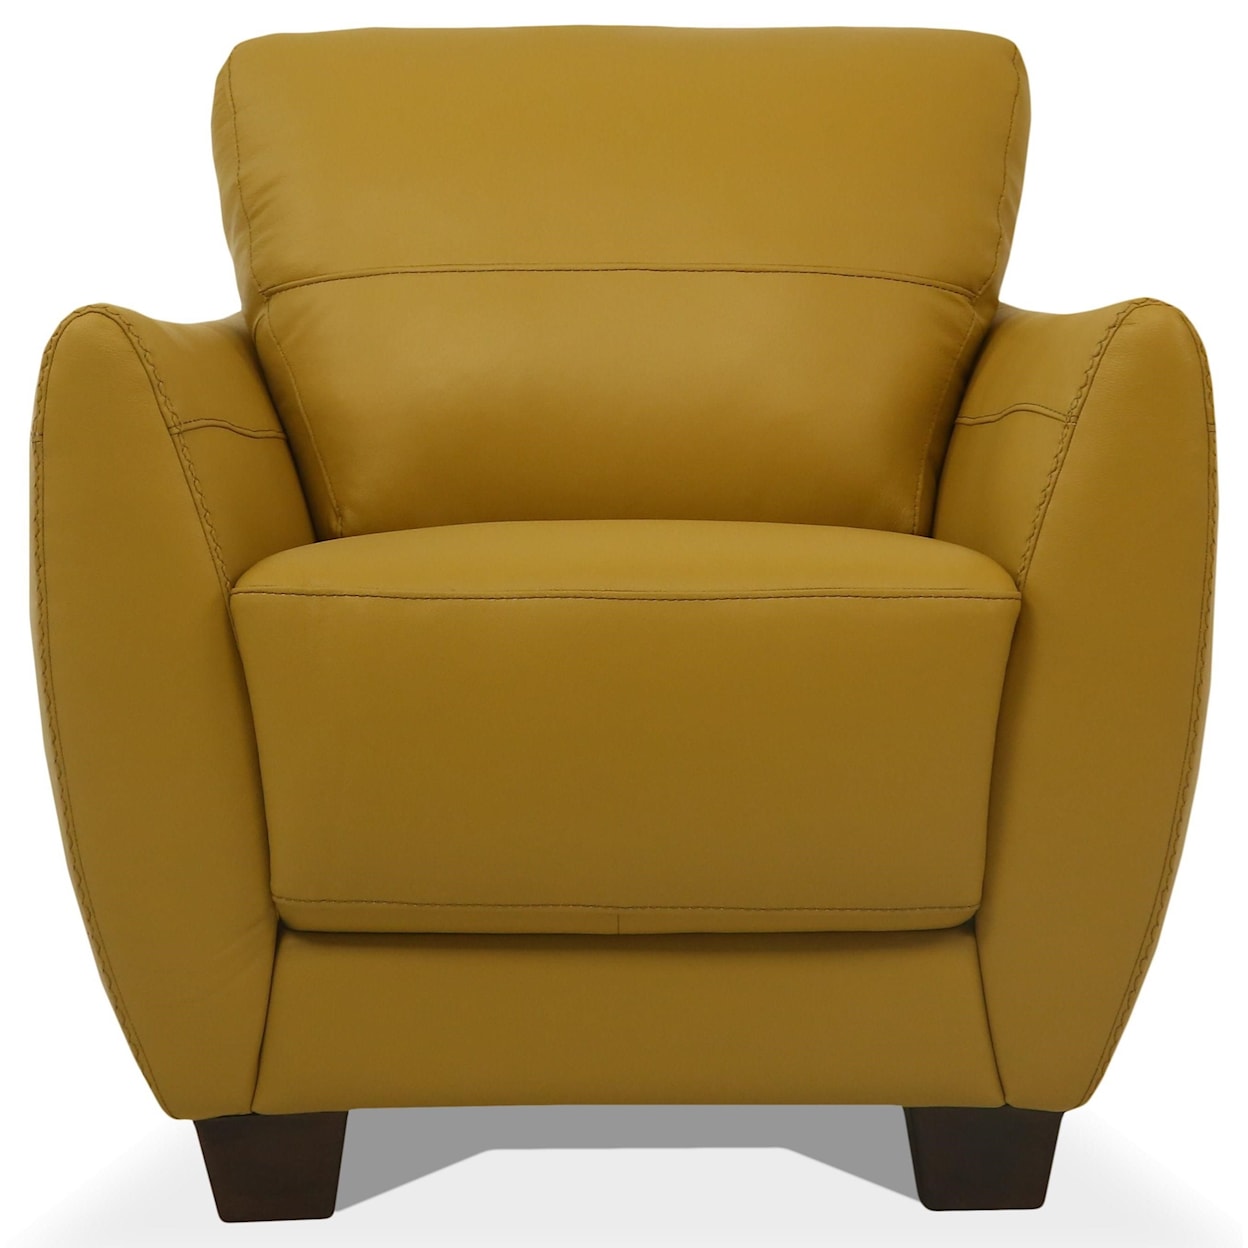 Acme Furniture Valeria Chair